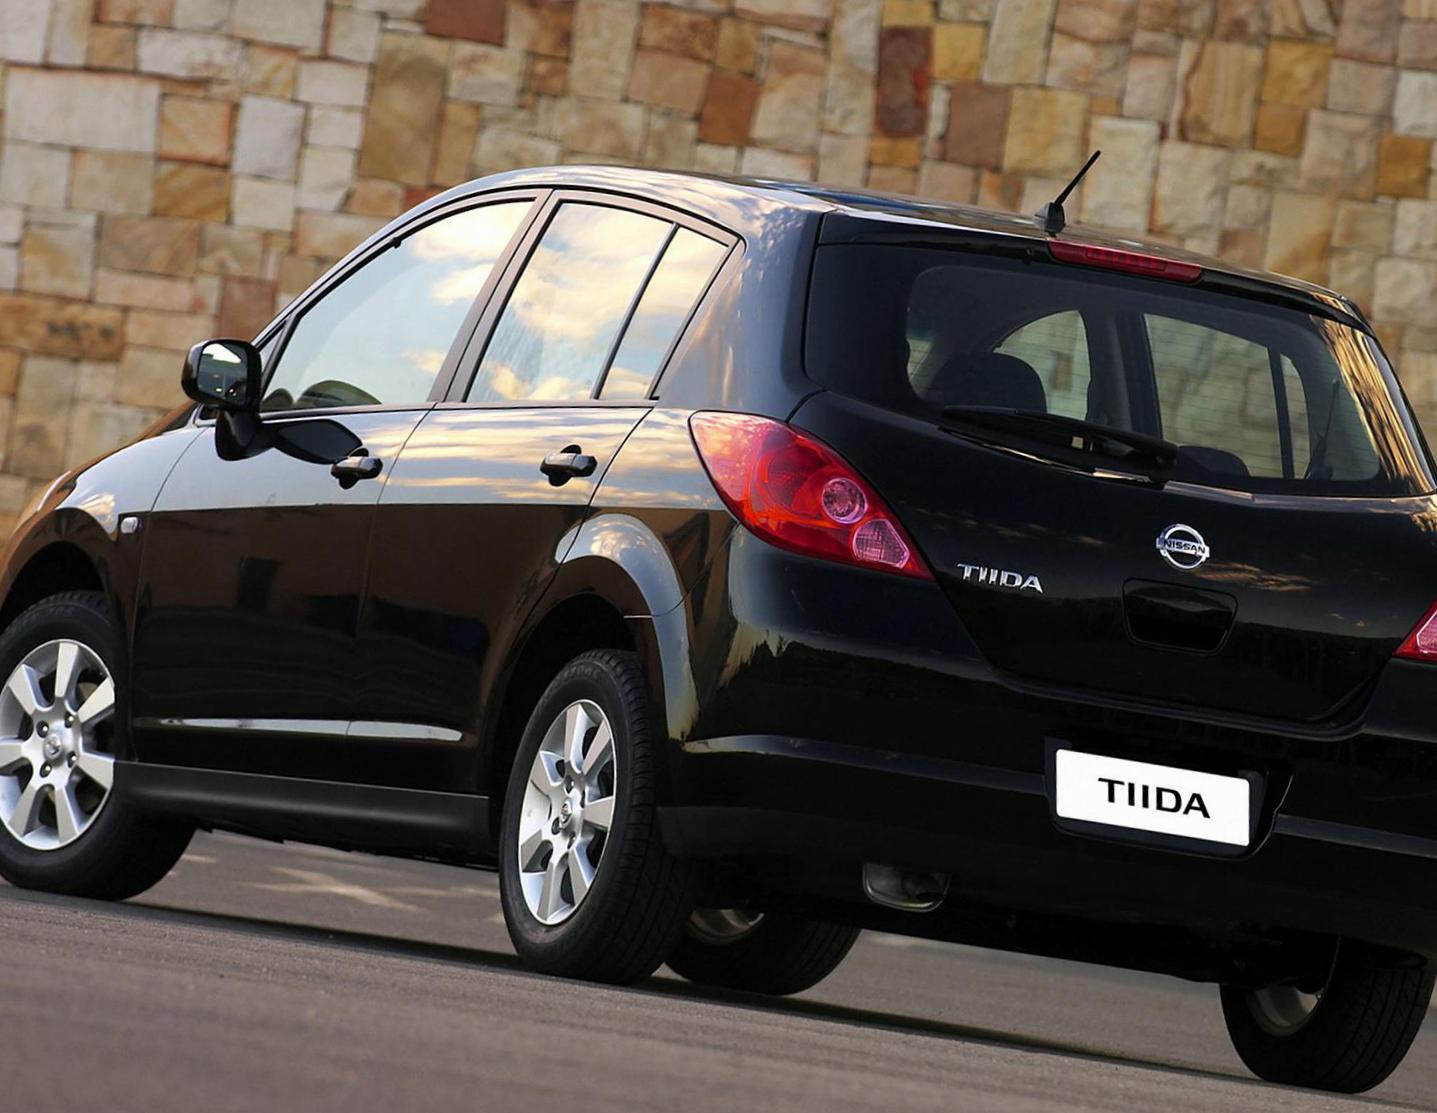 Tiida Hatchback Nissan approved 2007